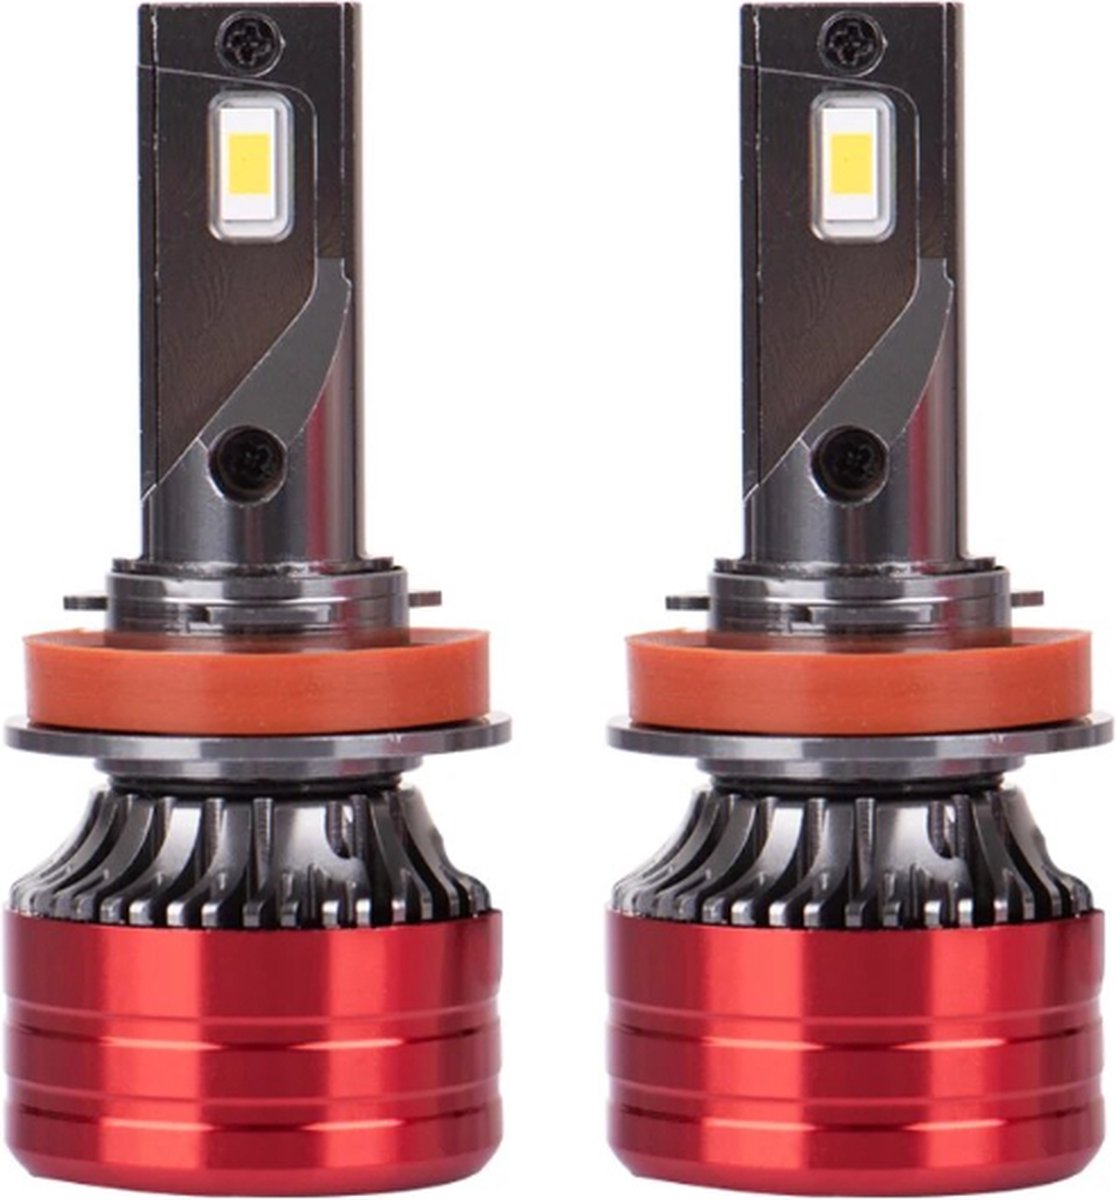 TLVX H9 Mini Turbo LED lampen 29.600 Lumen 6000k Helder Wit (set 2 stuks) CANBUS EMC adapter, Extra Fel, CSP LED CHIP 96 Watt Auto – Vrachtwagen - Scooter - Motor - Dimlicht - Grootlicht – Mistlicht -Koplampen - Autolamp - Autolampen 12V - 24V